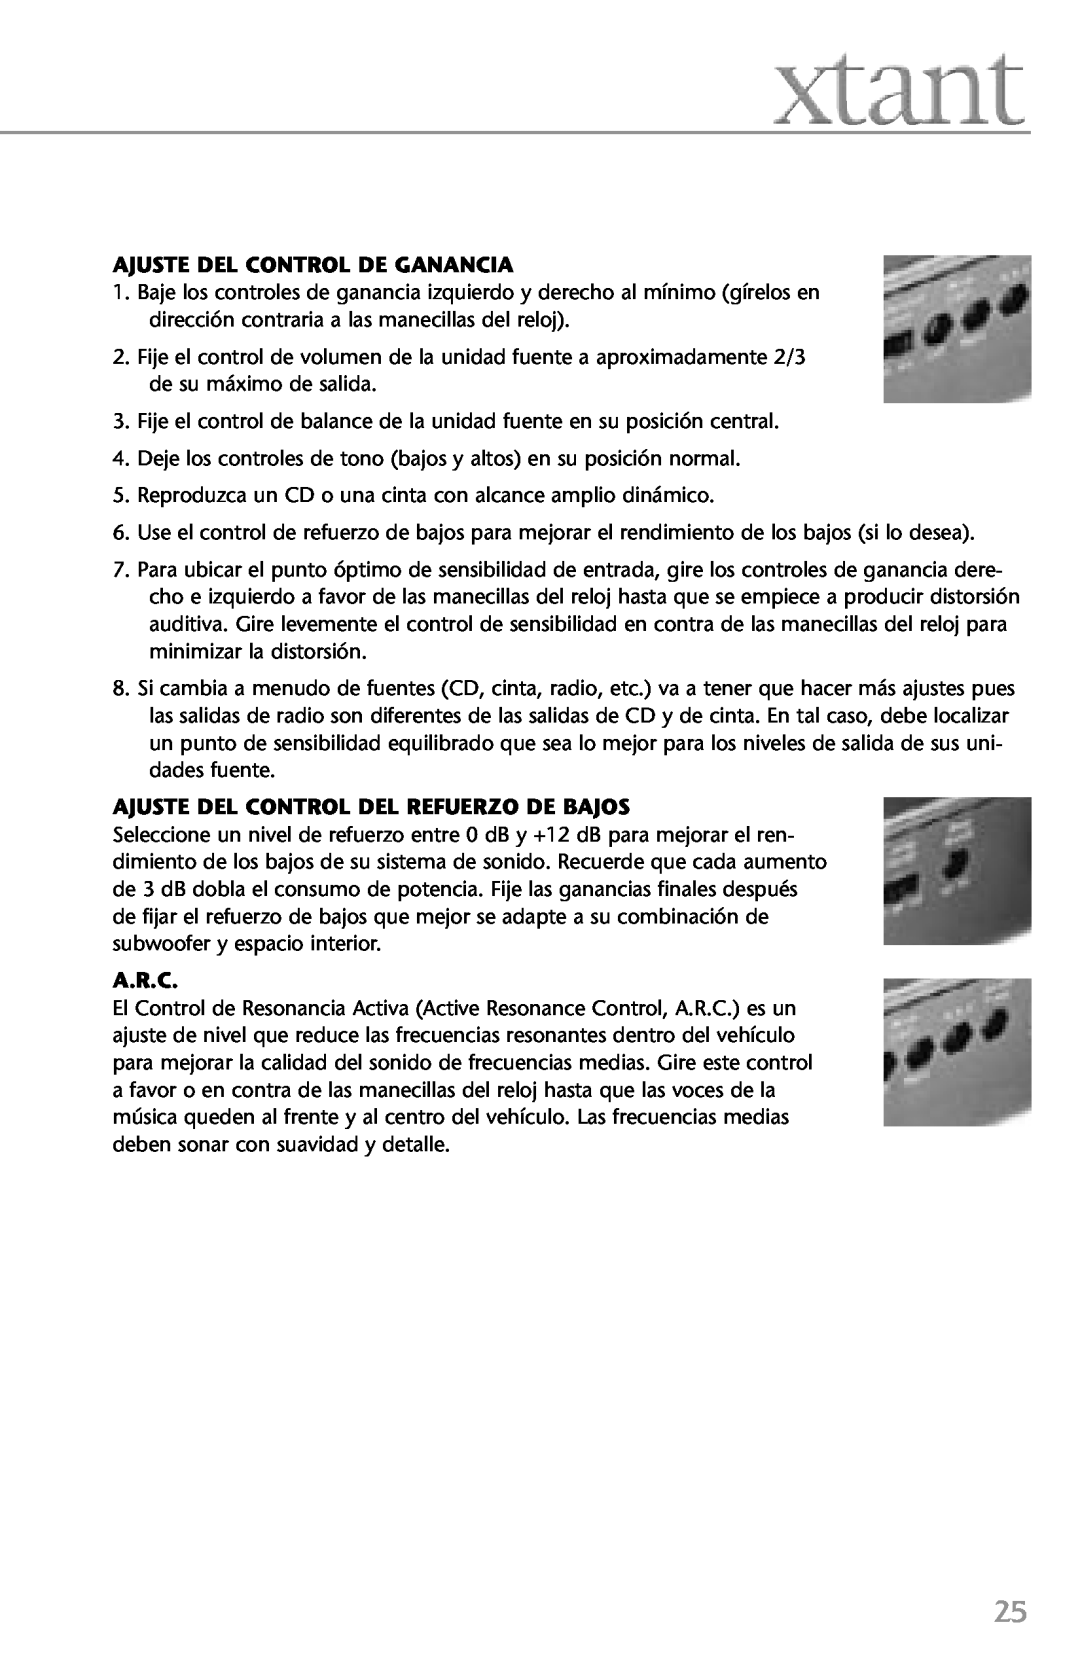 Xtant 4.4, 2.2 owner manual Ajuste Del Control De Ganancia, Ajuste Del Control Del Refuerzo De Bajos, A.R.C 